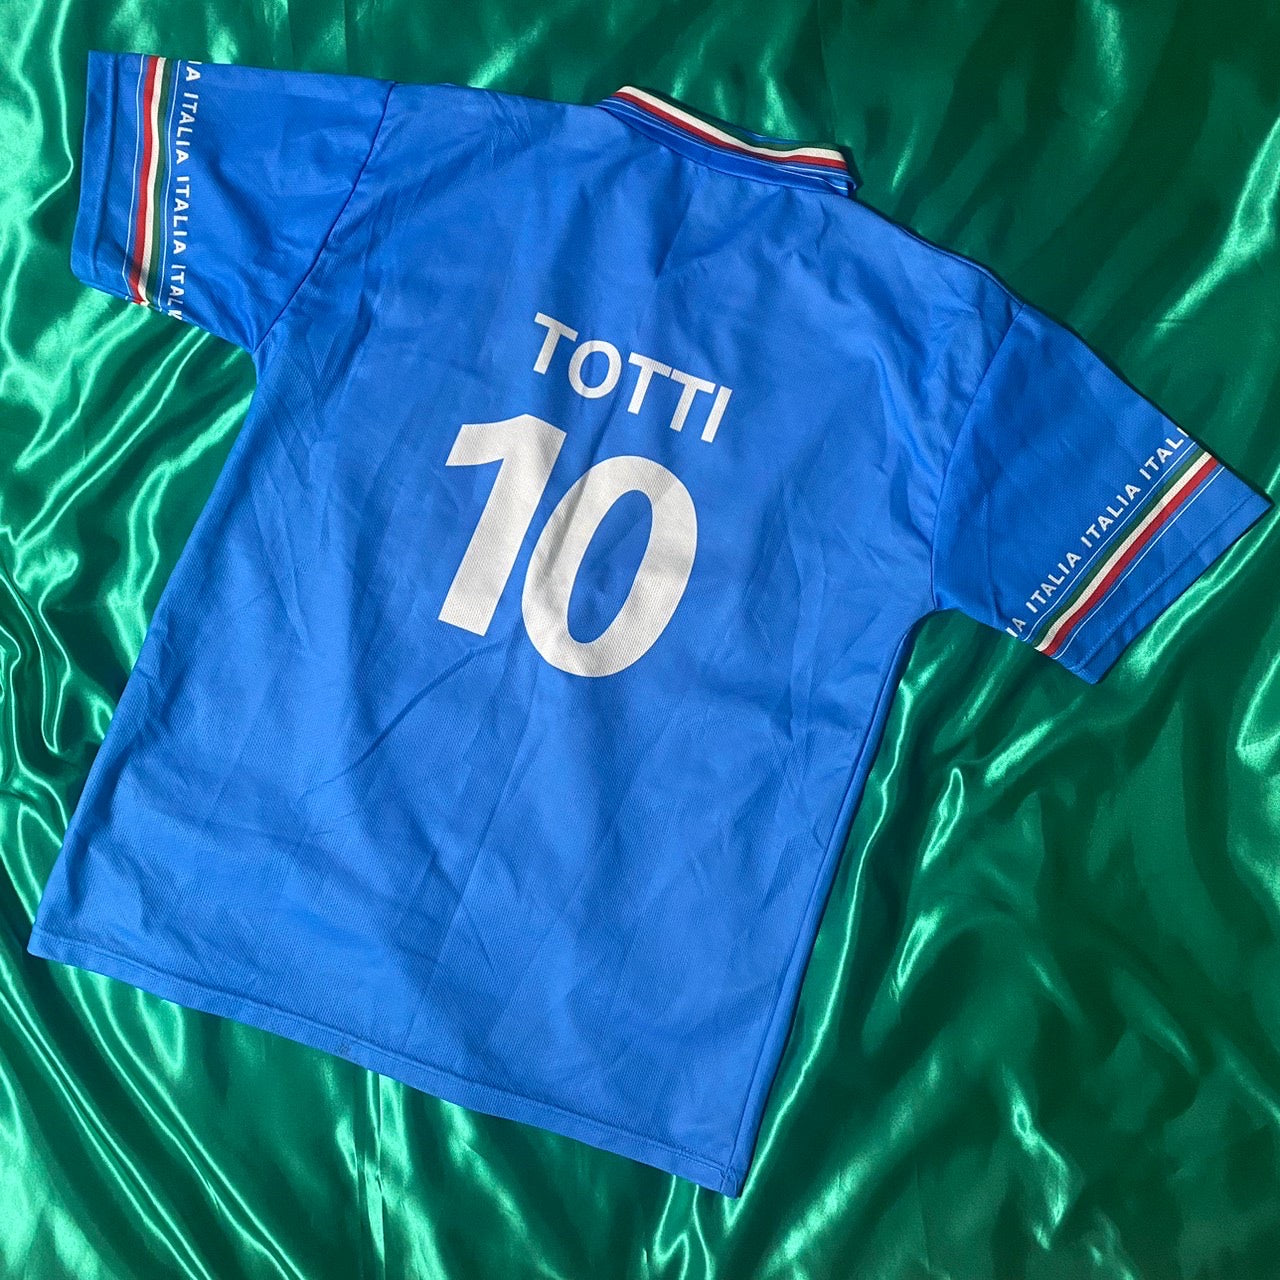 ナイキ イタリア ITALIA  トッティ TOTTI 10  Tシャツ